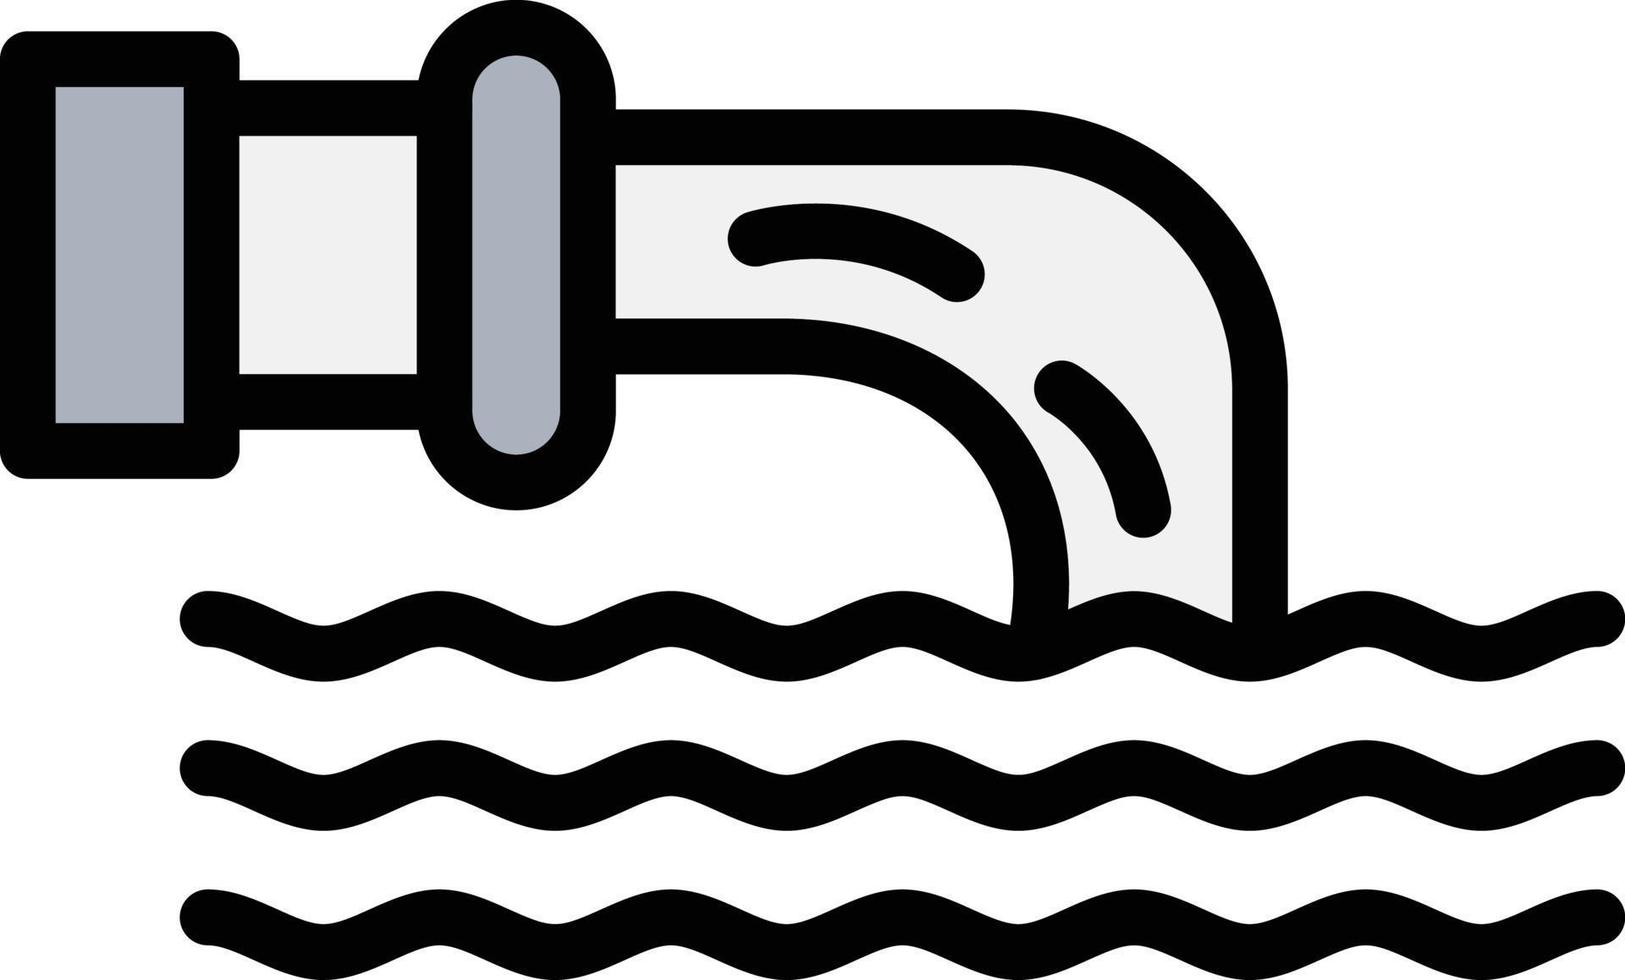 afvalwater vector pictogram ontwerp illustratie